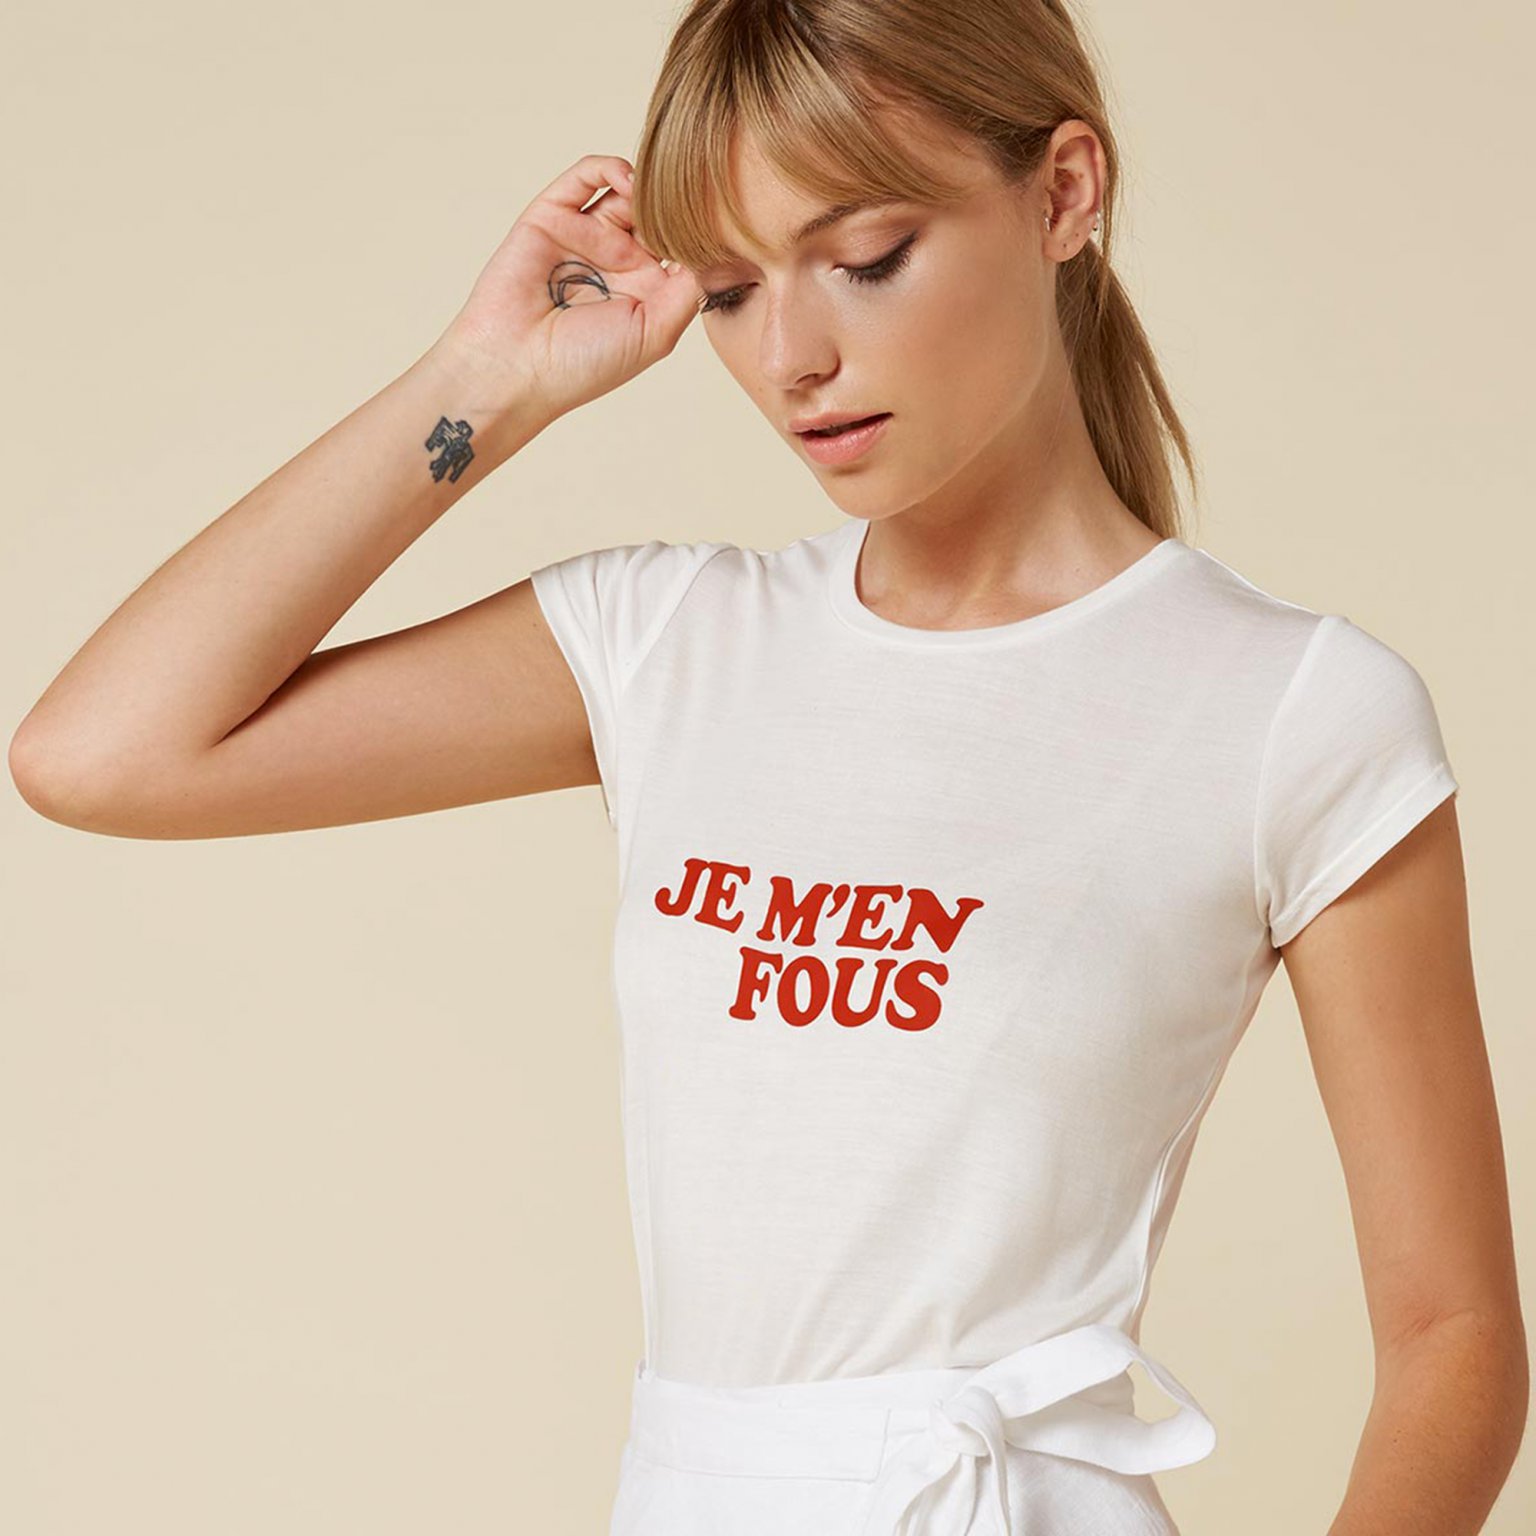 09-t-shirt-feministe-folkr-je-m-en-fous-reformation